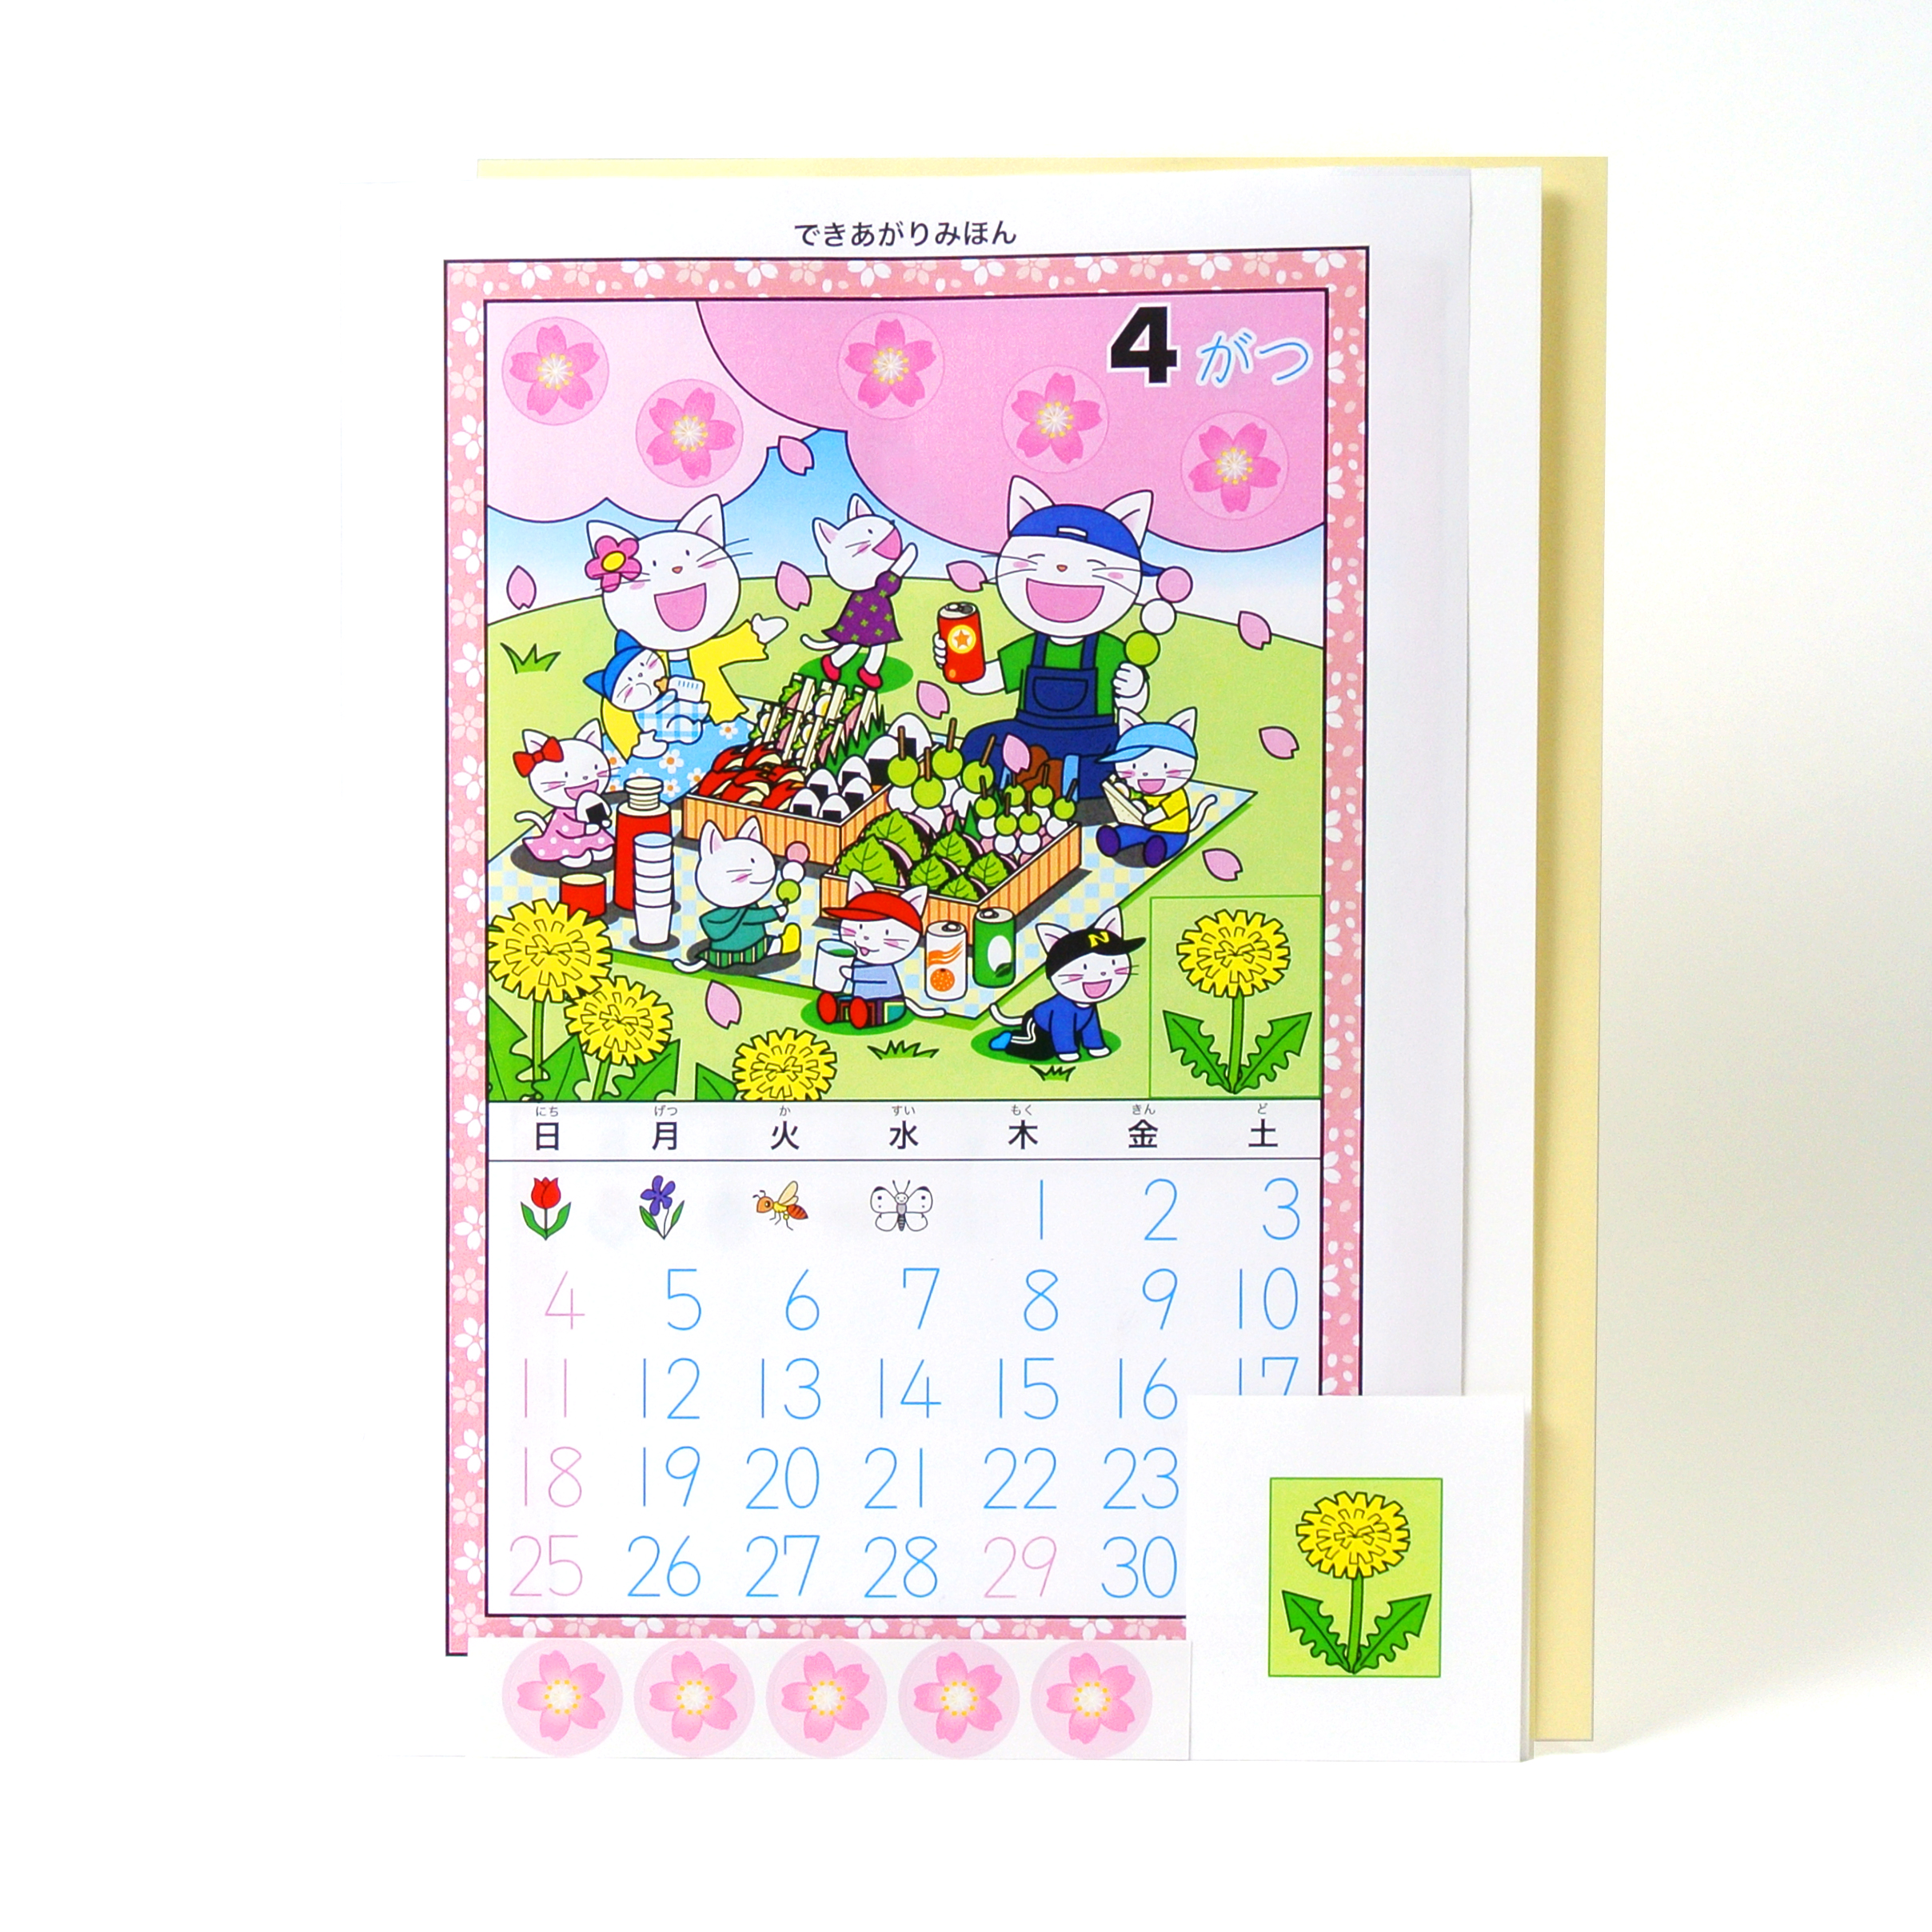 7月の手作りカレンダー 星の輝く七夕祭り 幼児 小学校低学年対象 日本幼児教育センター